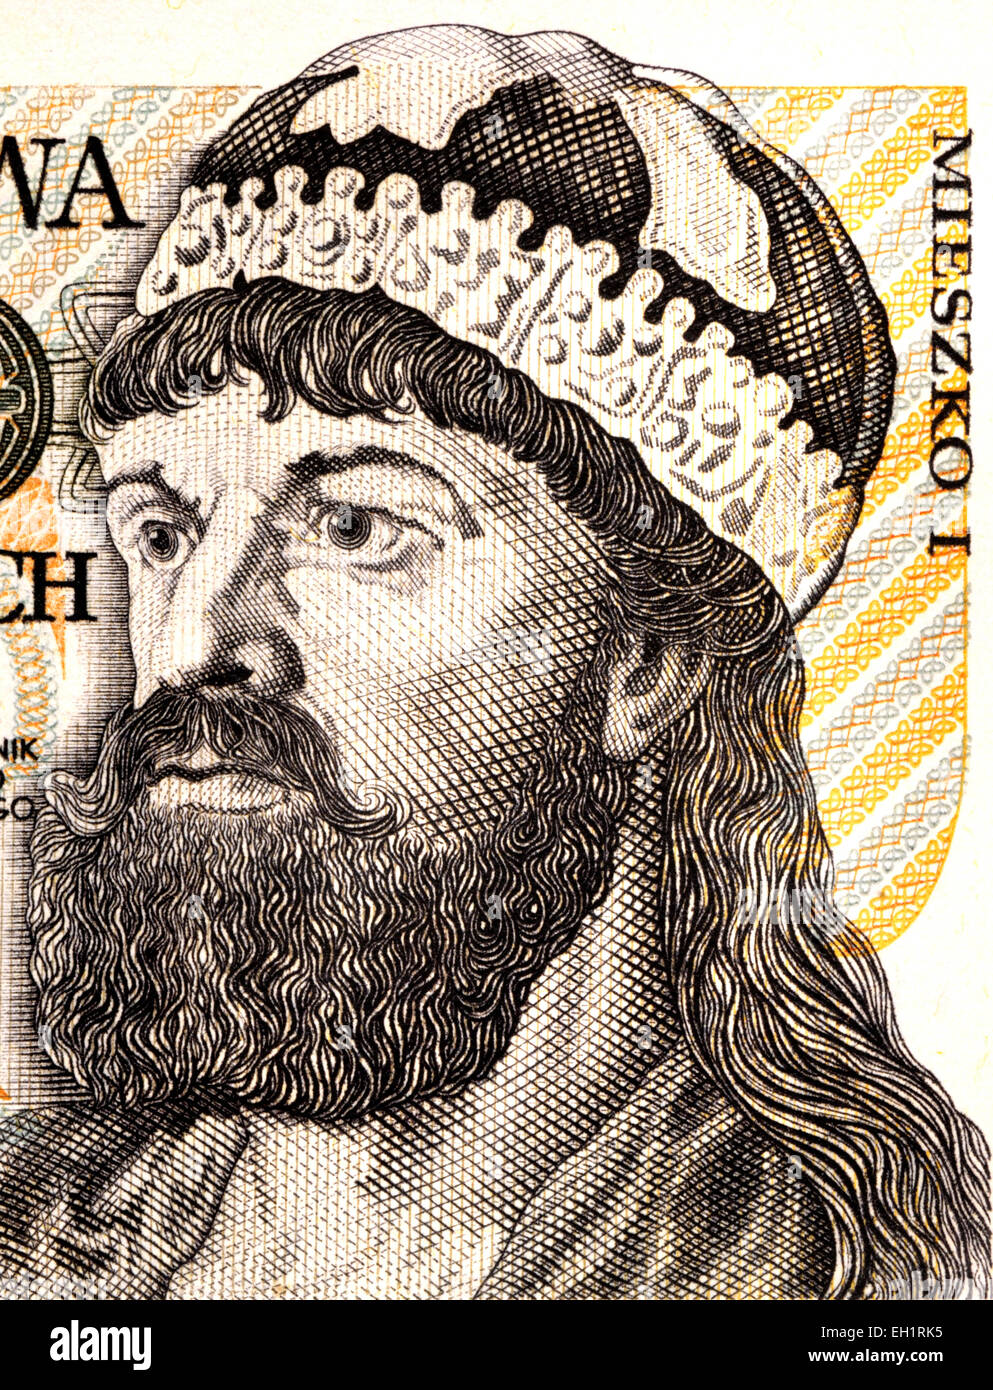 Dettaglio da un polacco 2000zl banconota che mostra ritratto re Mieszko I (930-992) Foto Stock